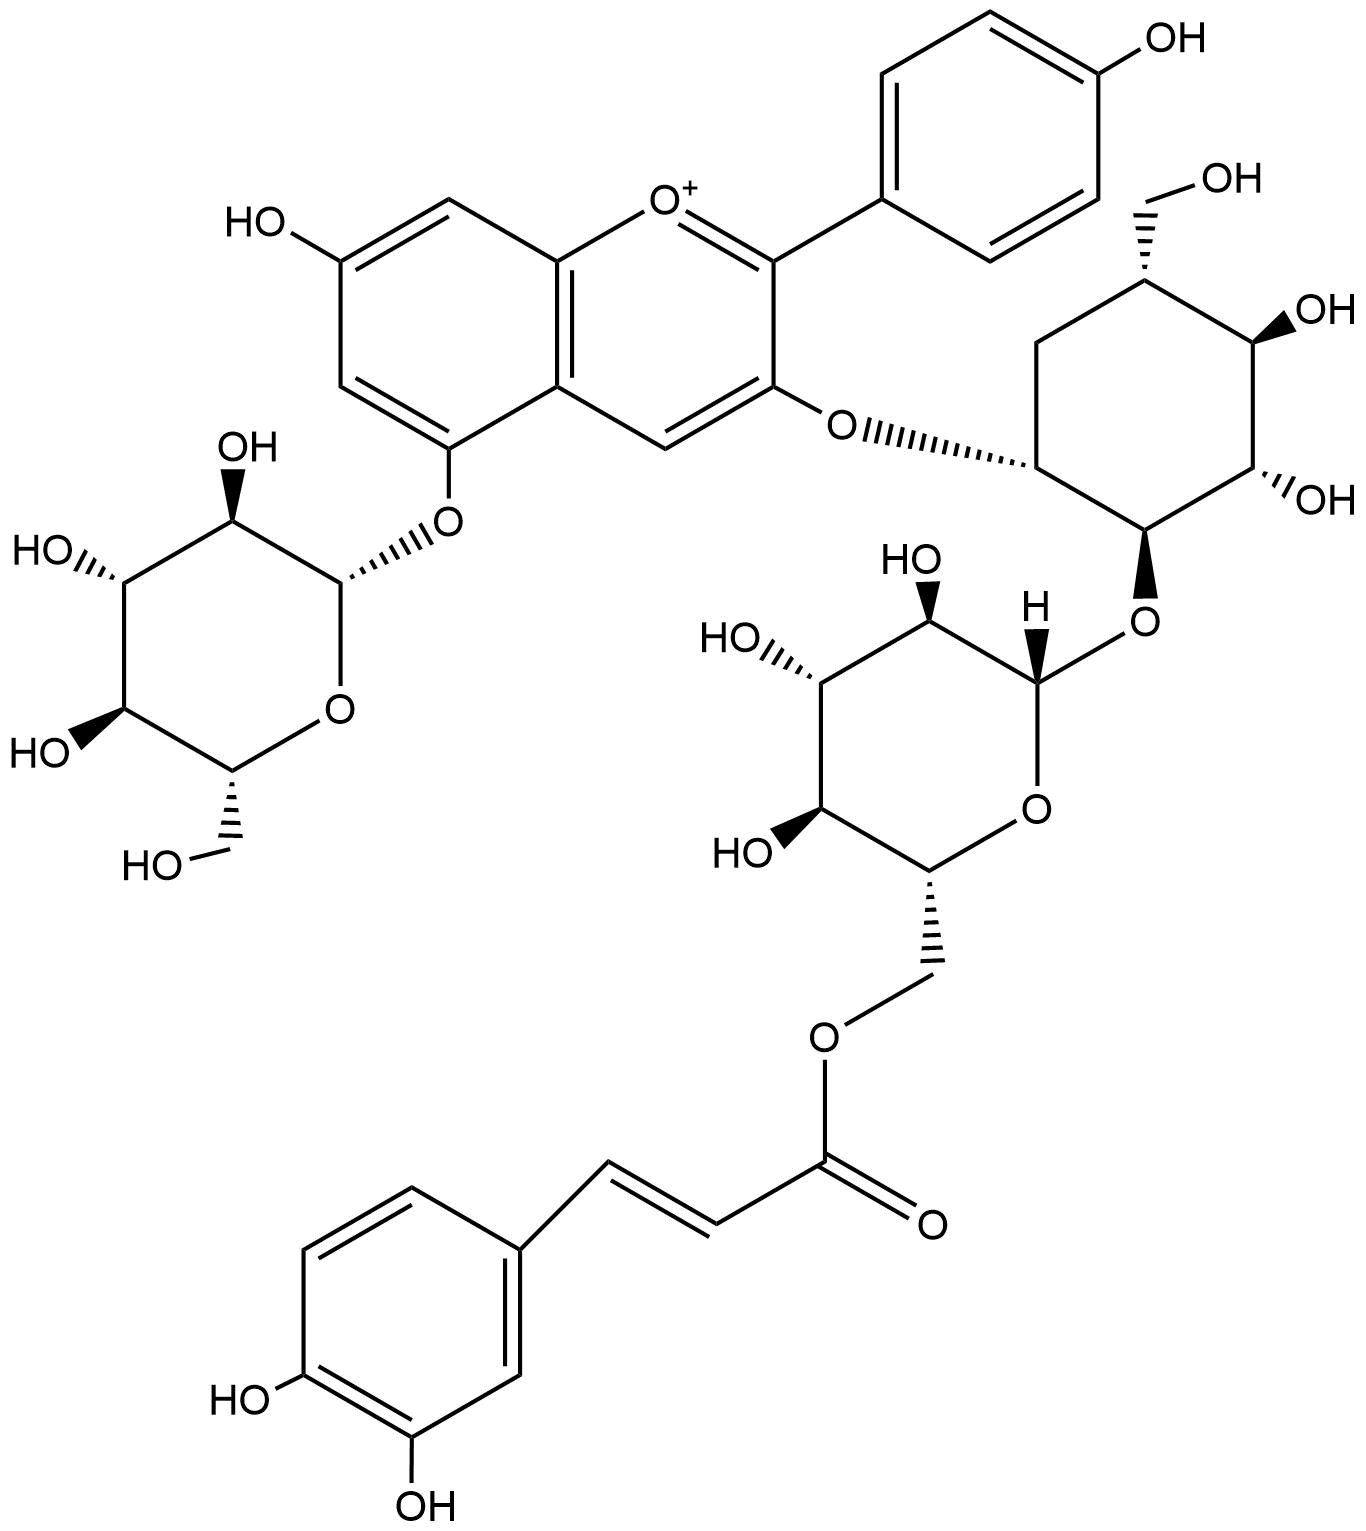 Pelargonidin 3-O-[6''-O-(E)Caffeoyl Sophoroside]-5-glucoside